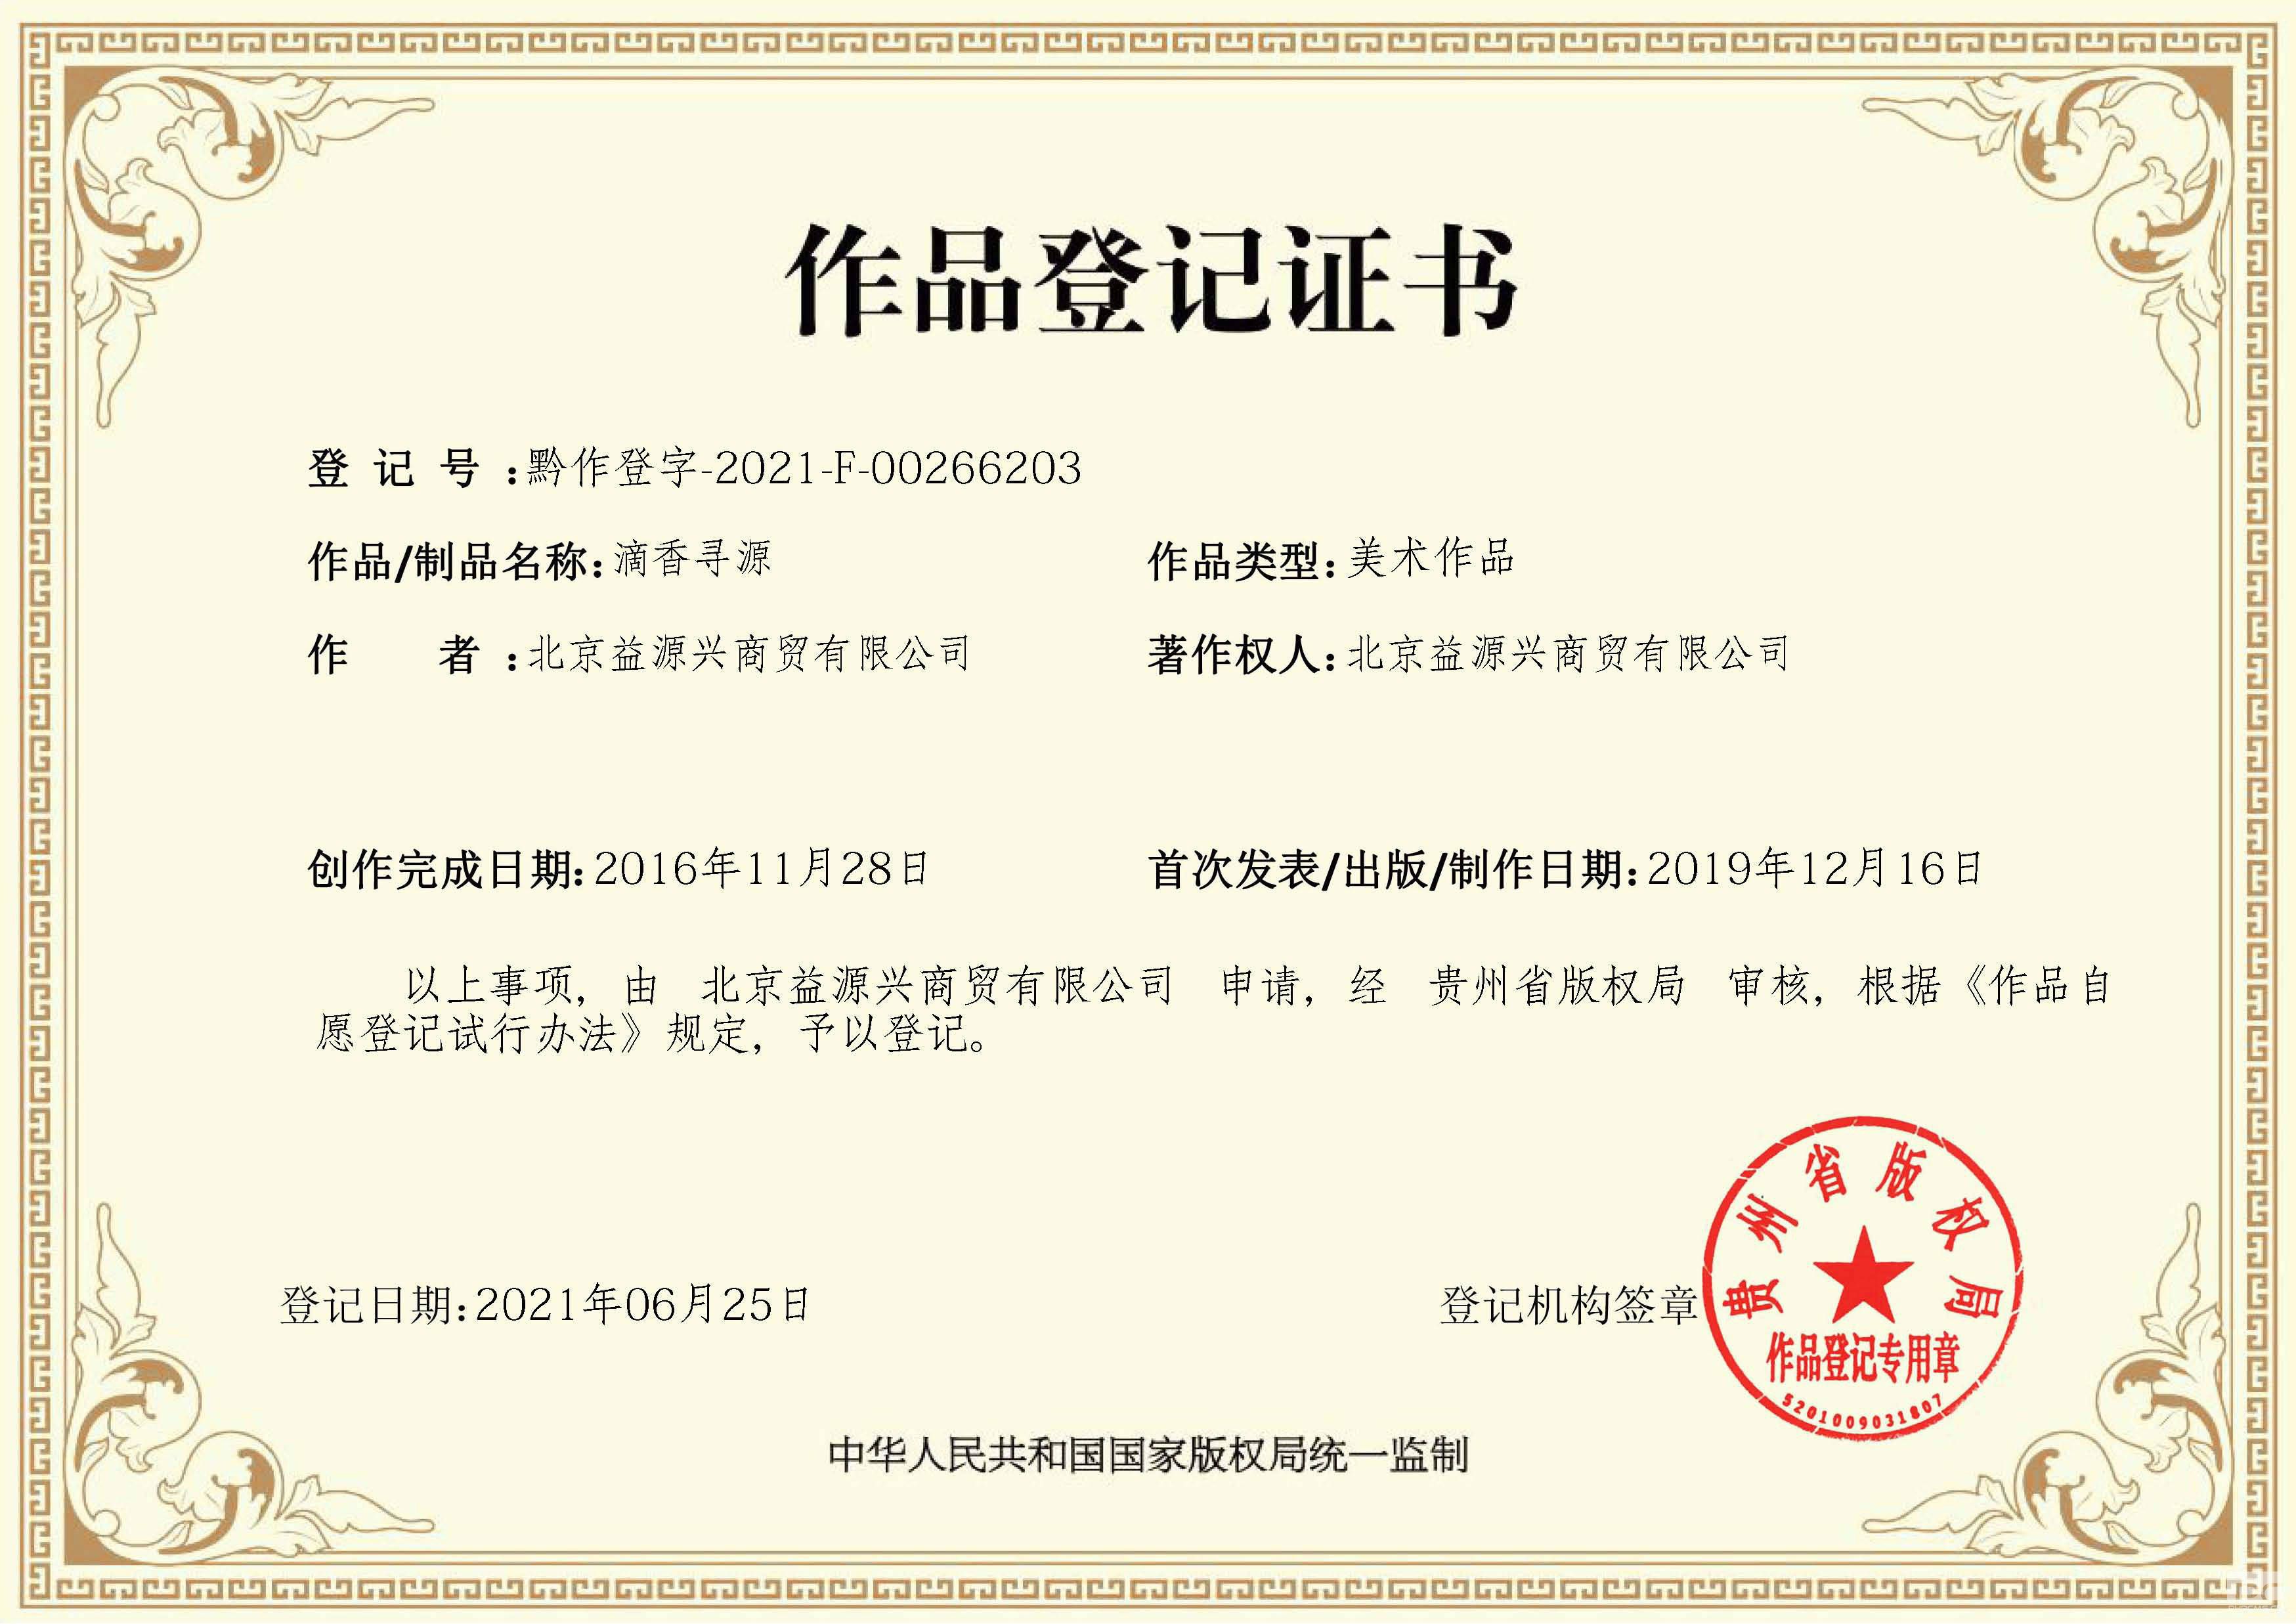 滴香寻源 作品登记证书：作品登记证由中华人民共和国国家版权局统一监制